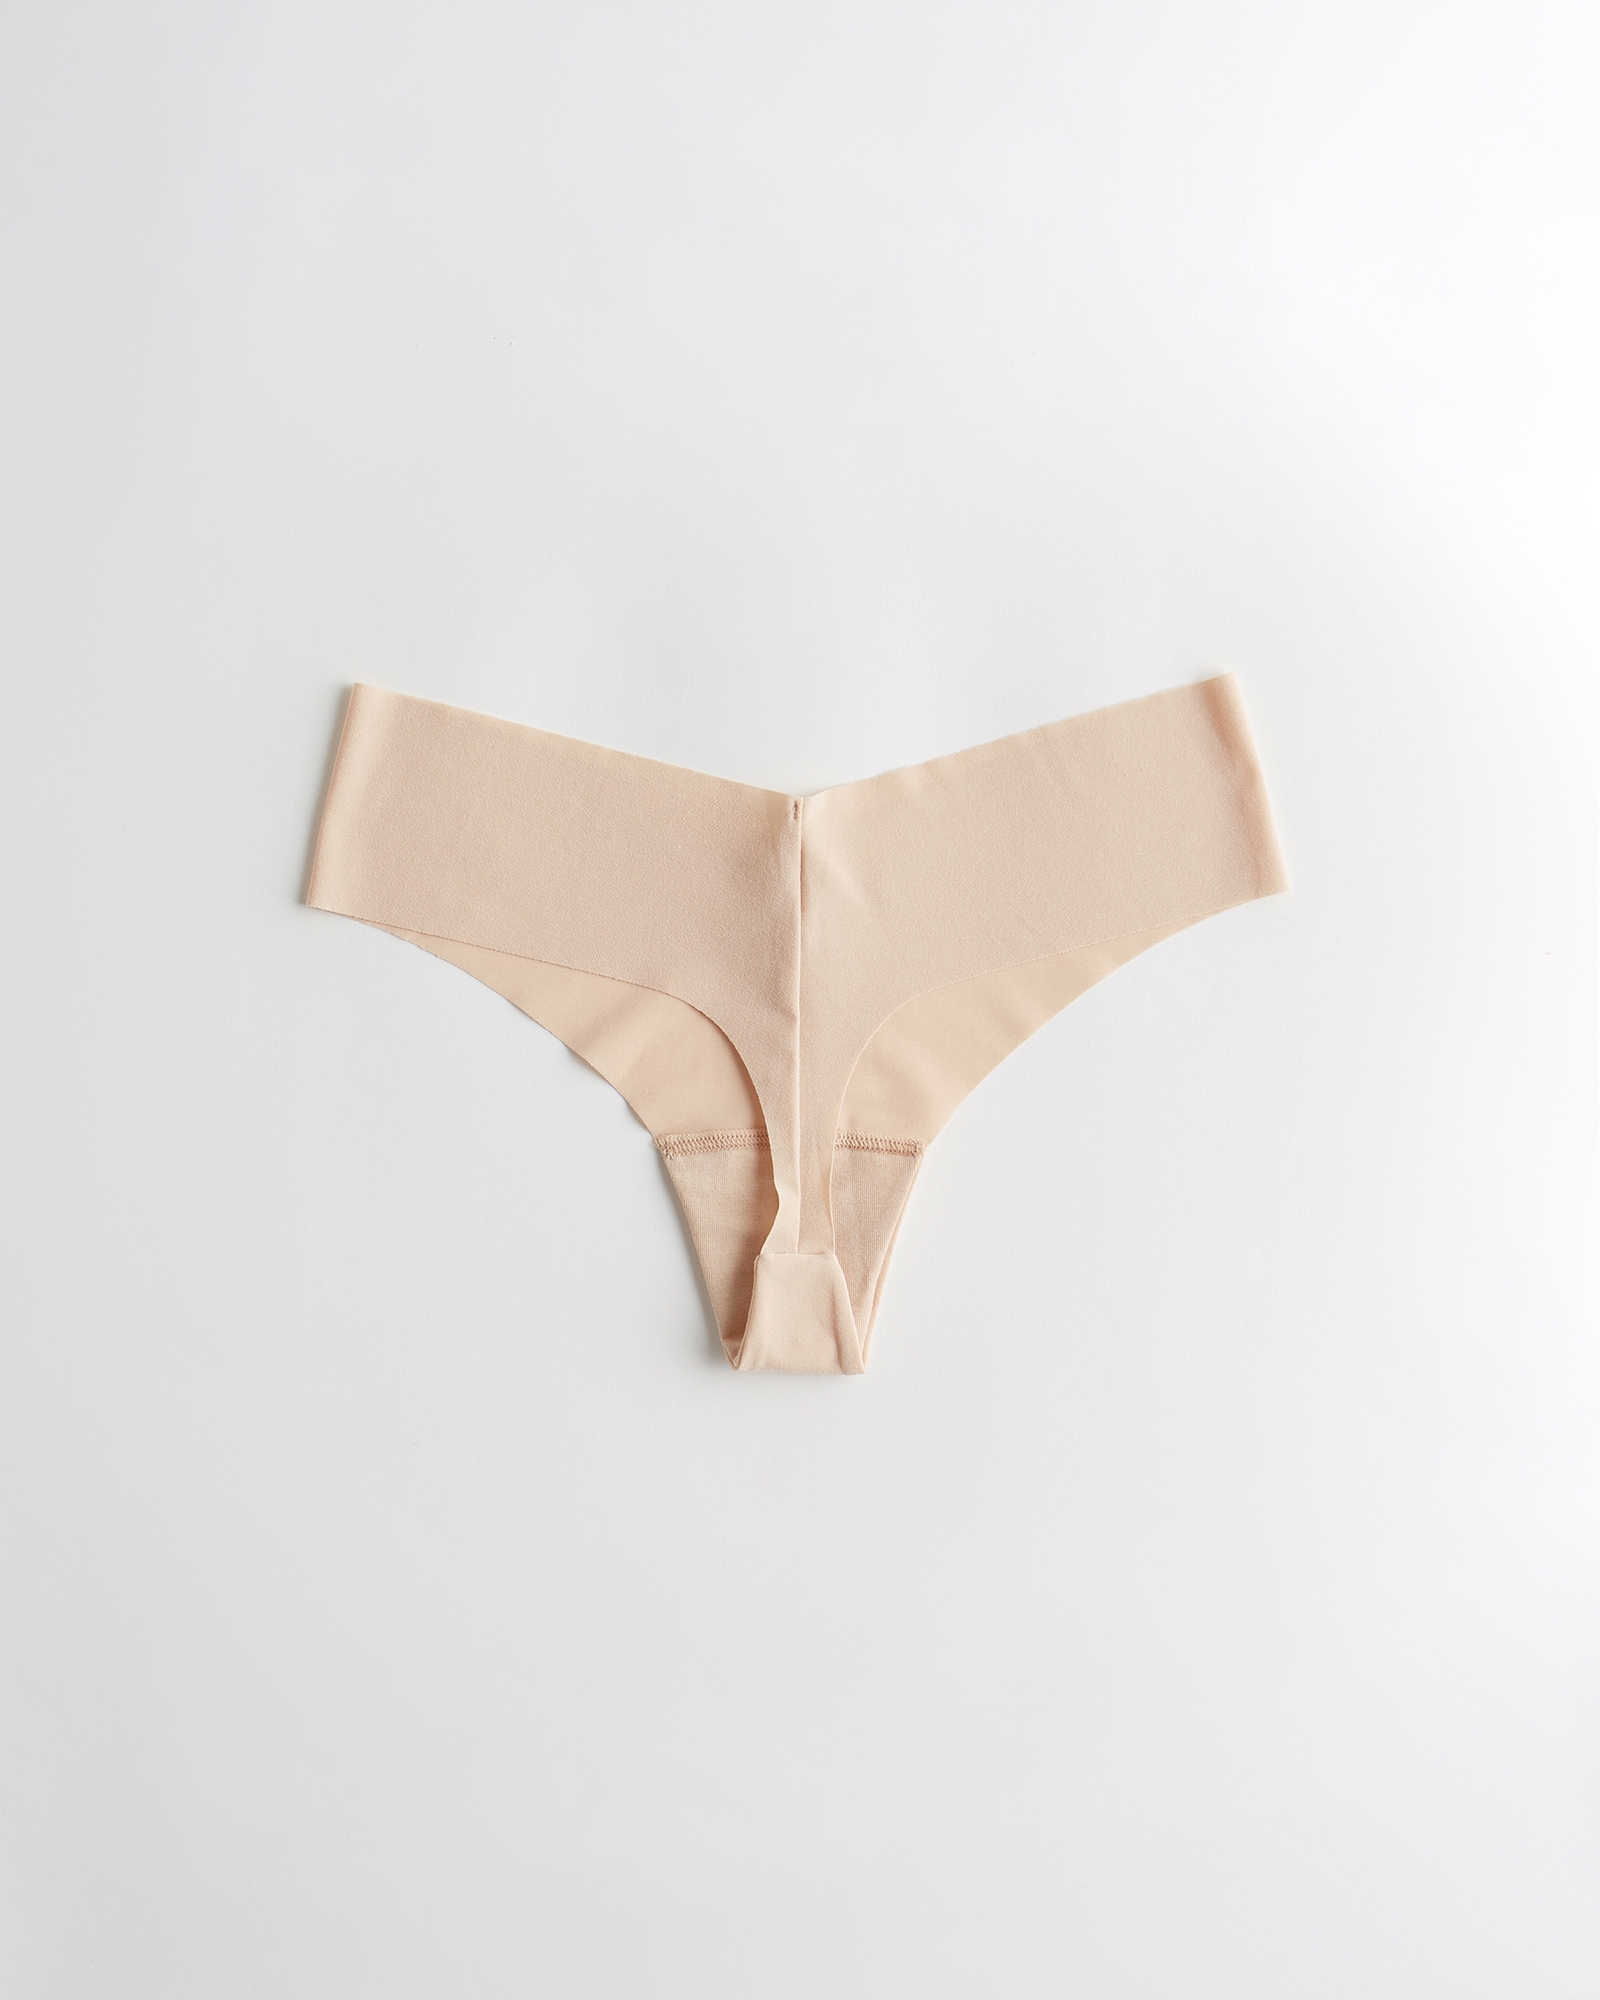  Victoria's Secret No Show Thong Panty Set of 3 Medium